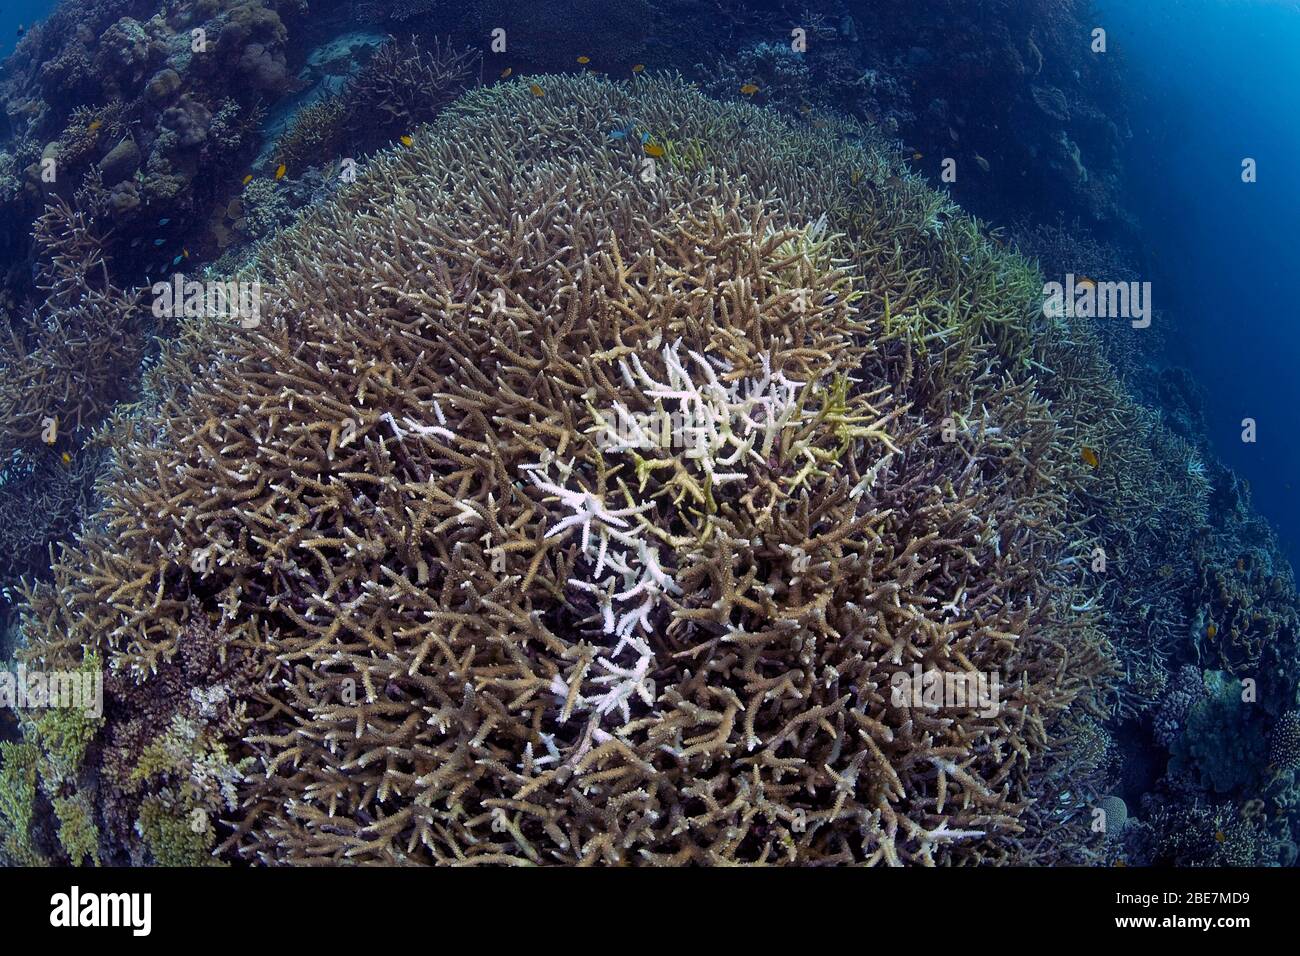 El blanquimiento de los corales, los corales de piedra blanqueada (Acroporidae), consecuencias del calentamiento global, reef moribundo, Moalboal, Cebú, Philippinen Foto de stock